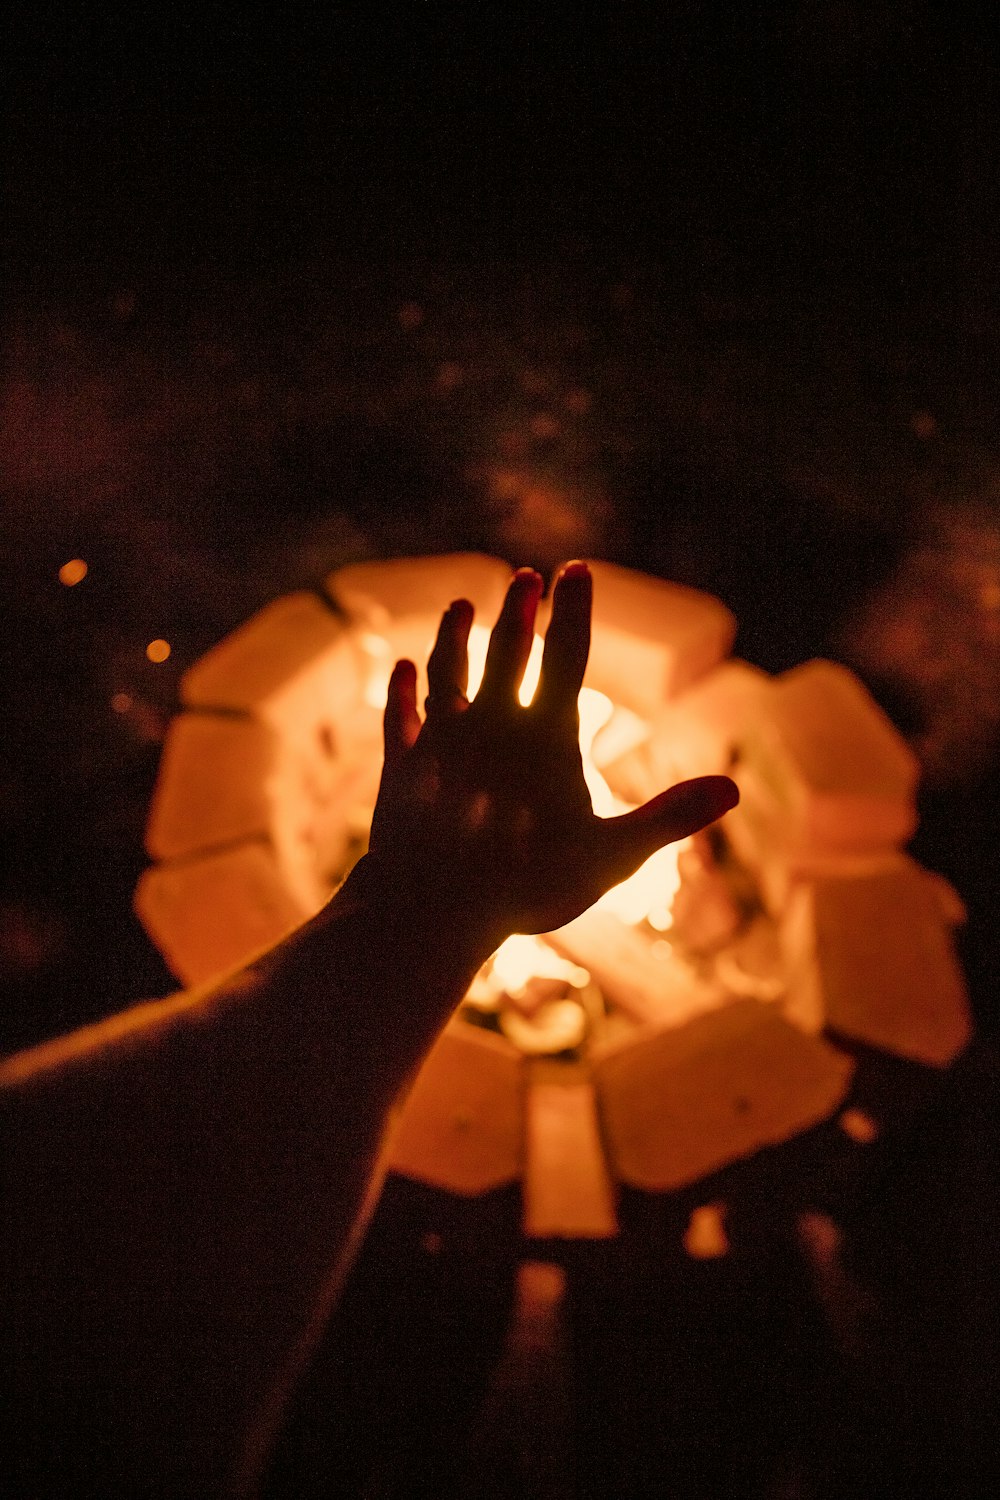 Foto donde se ve una mano calentándose en un fuego de leñ